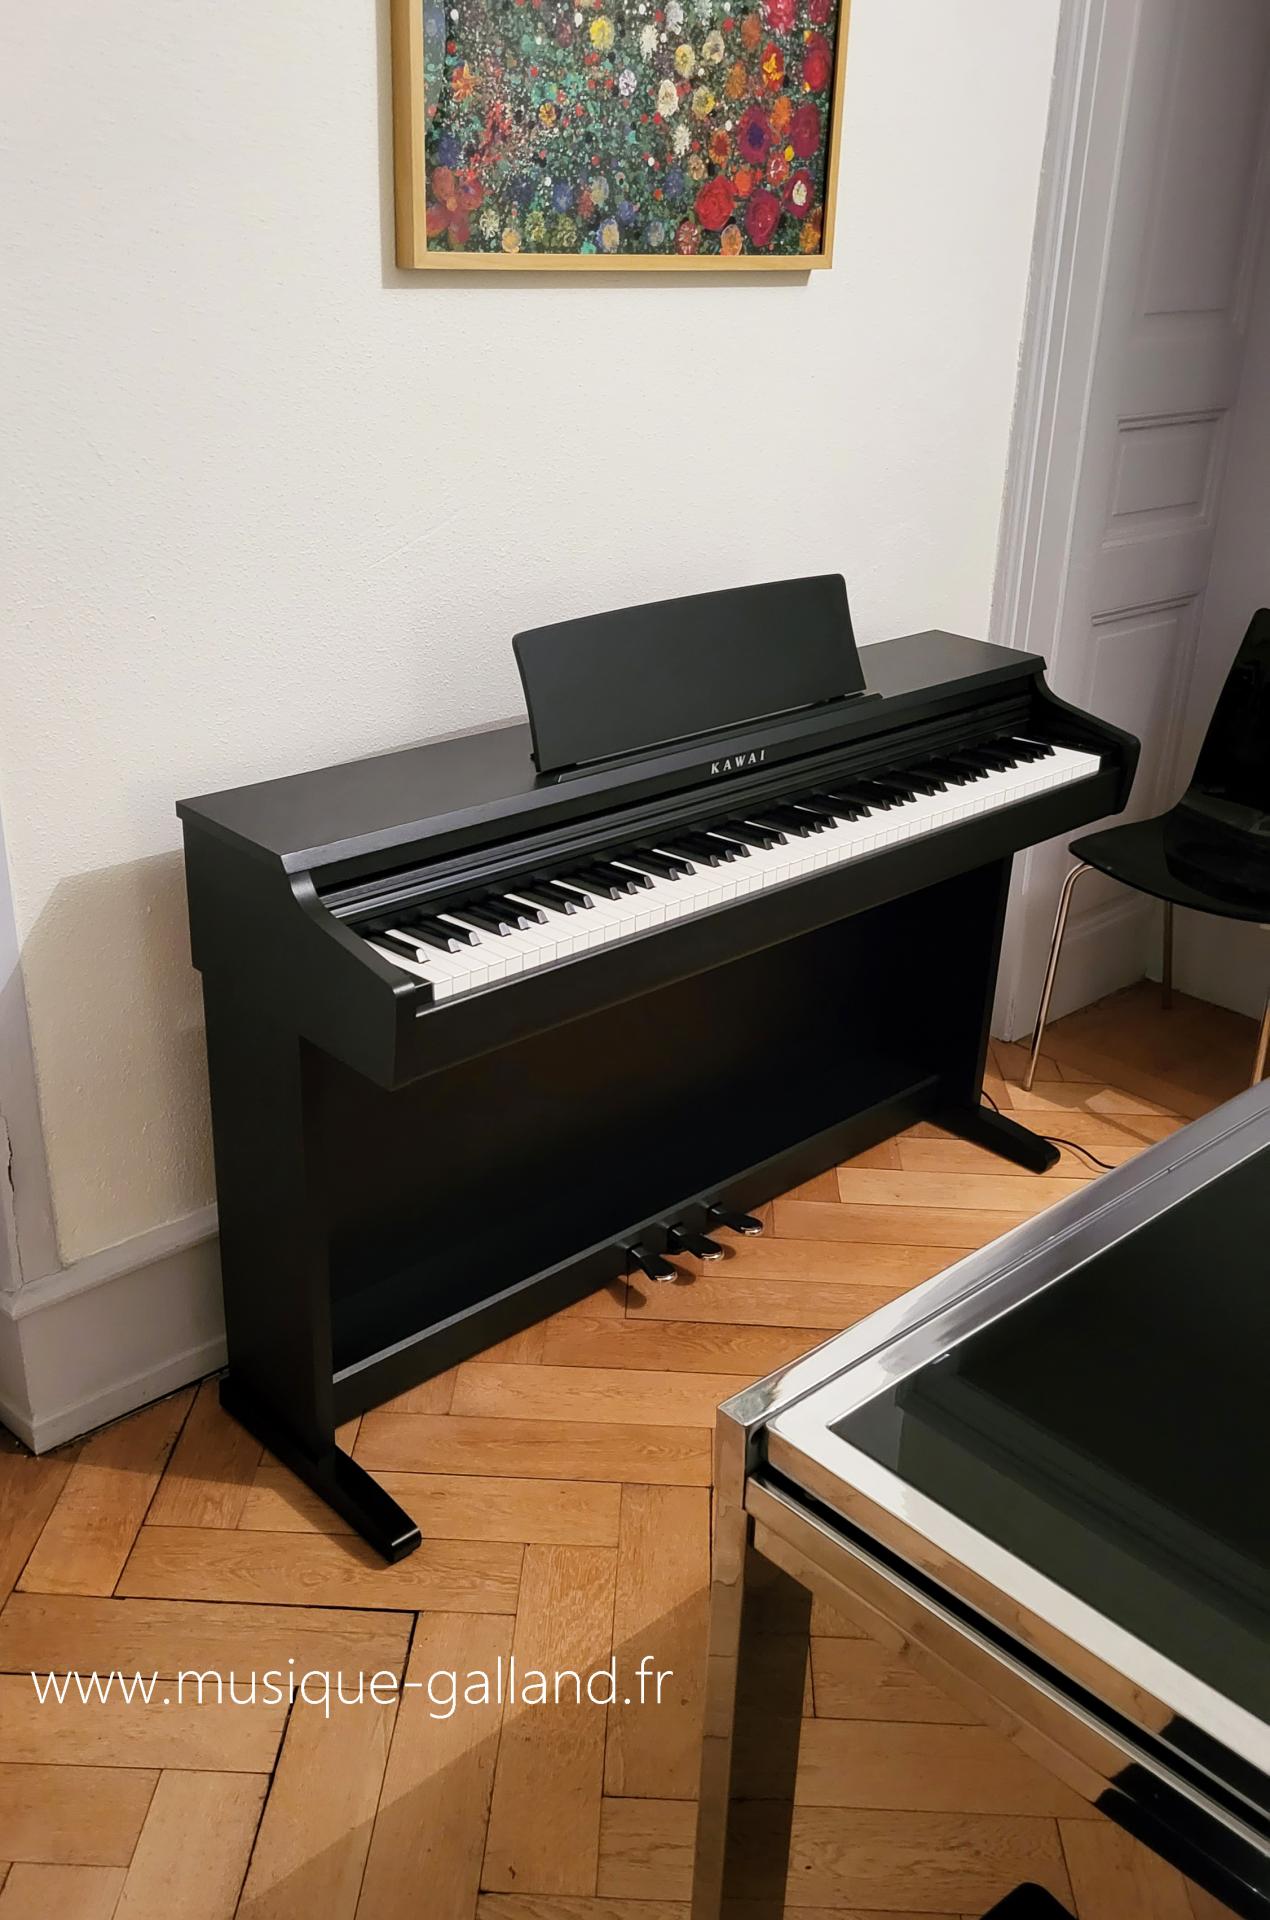 Support de clavier de piano Plans de construction numériques